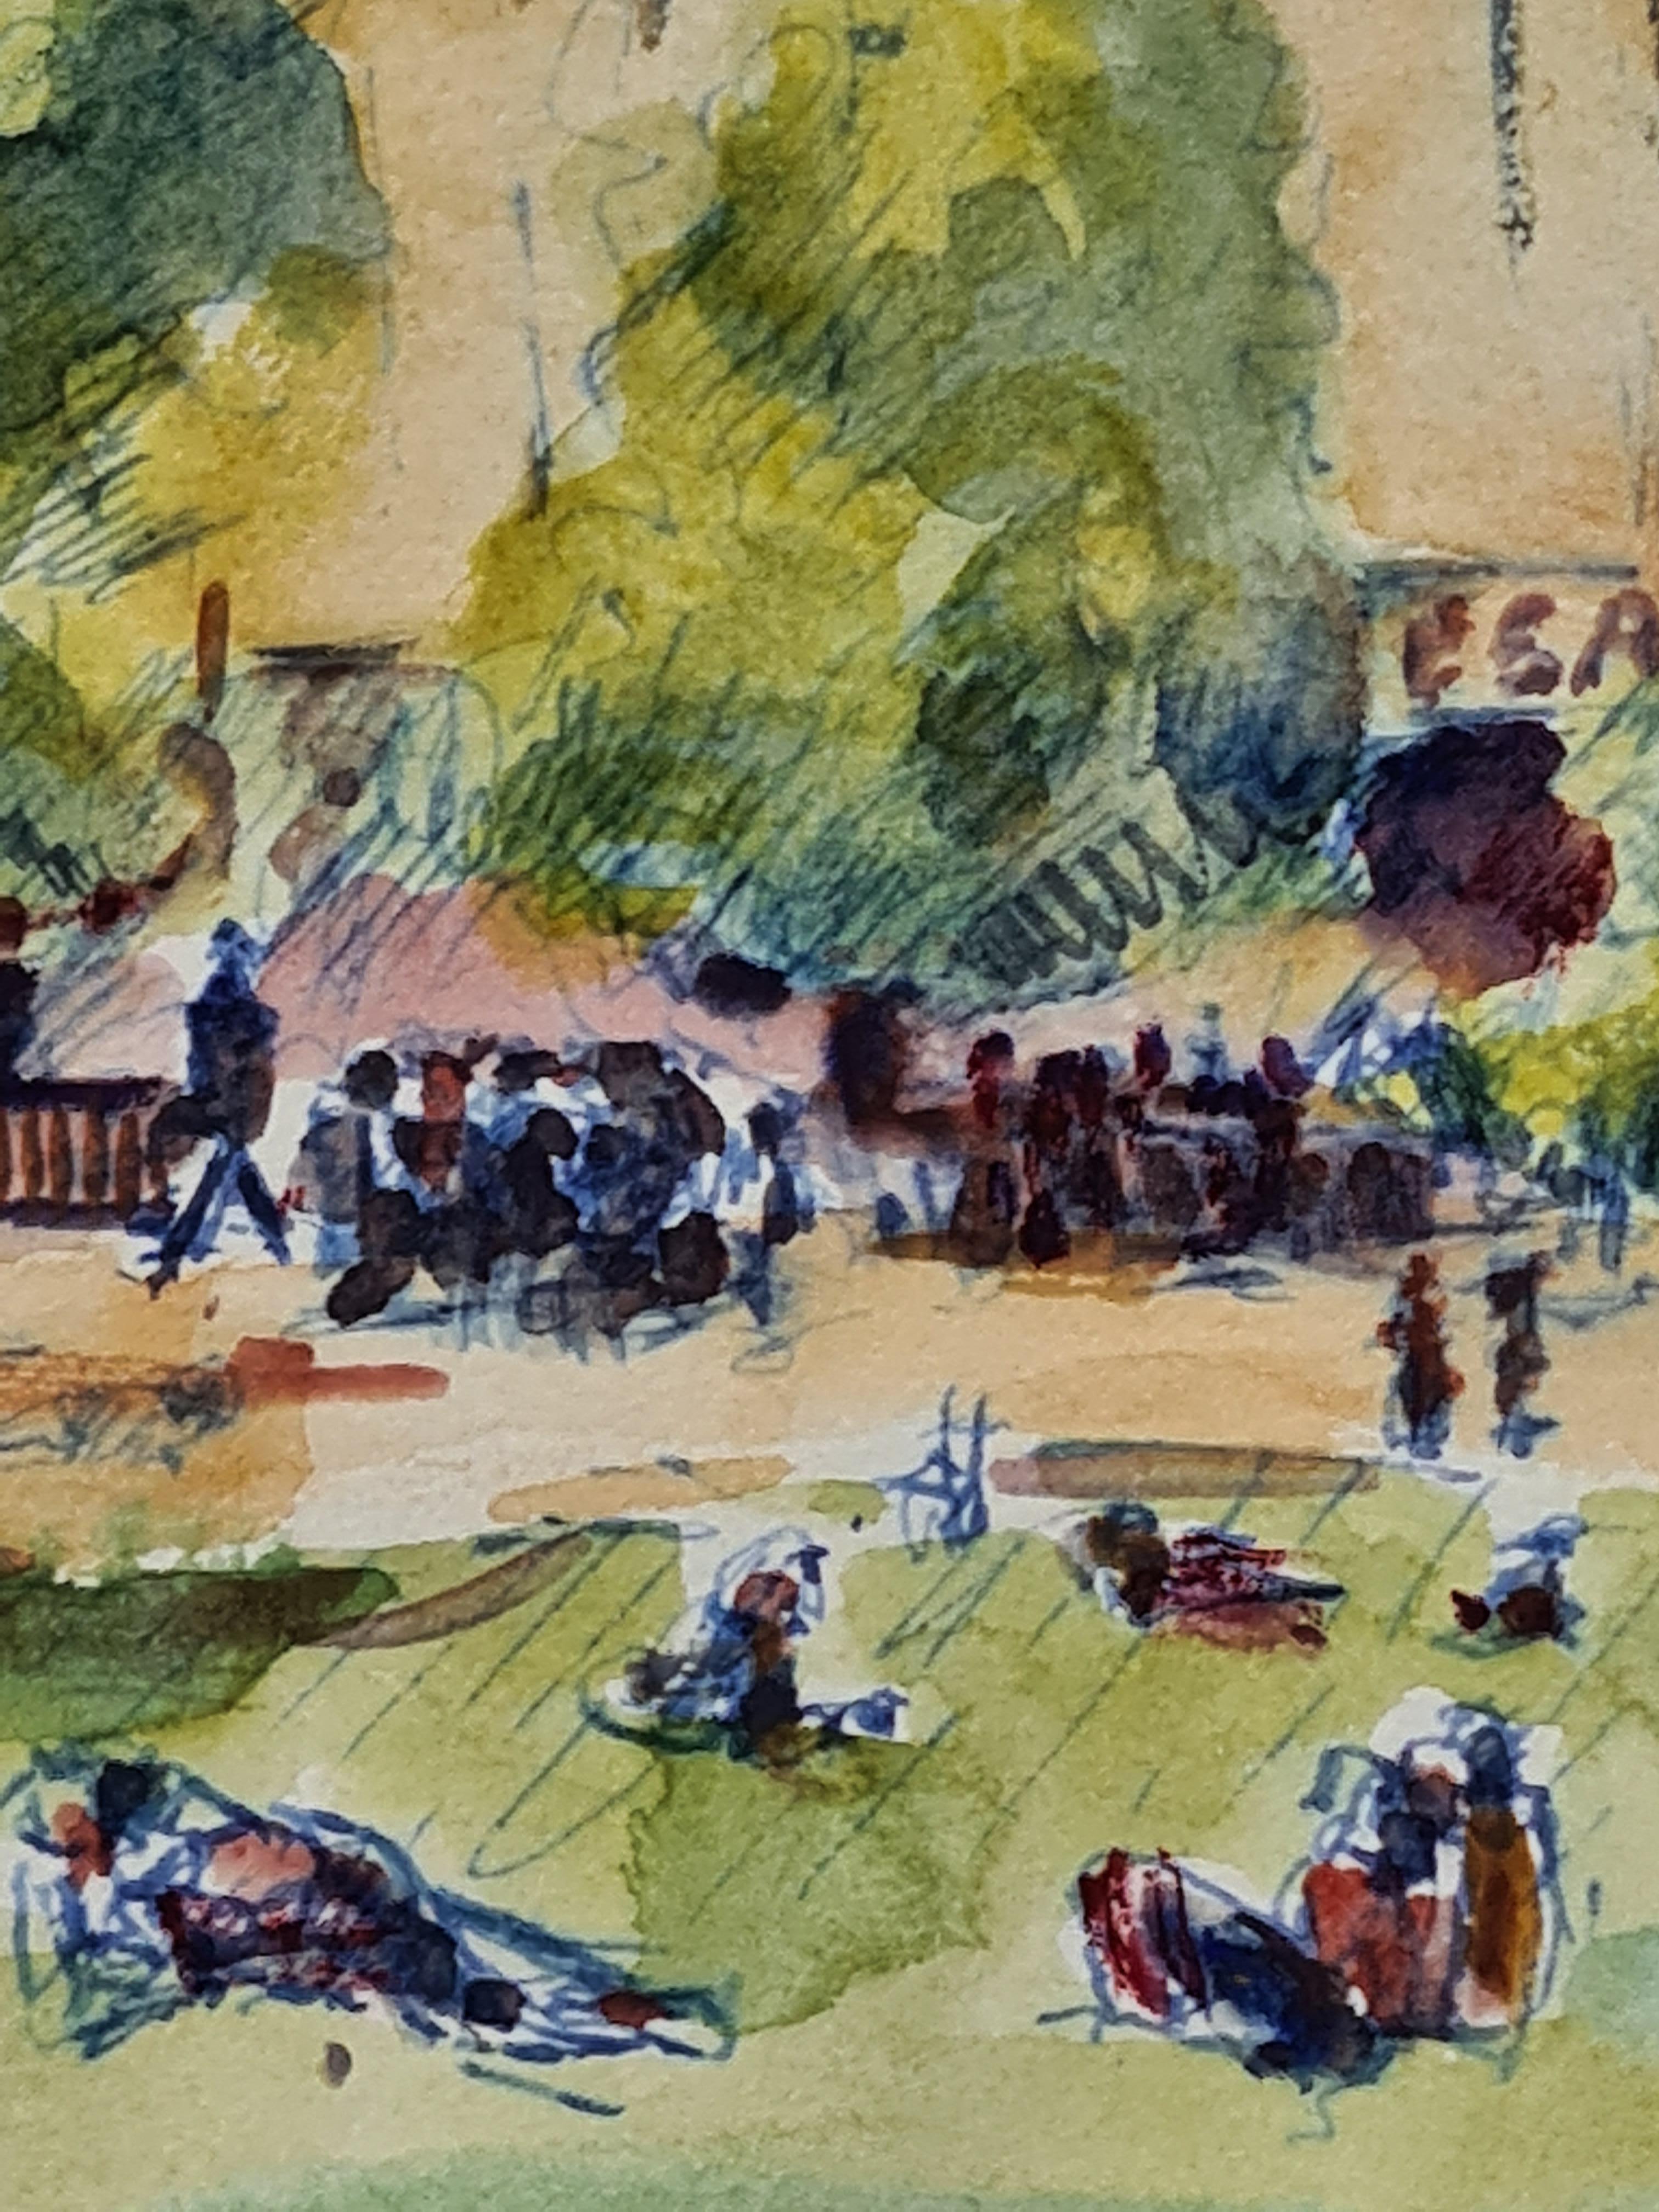 Französisches Aquarell auf Papier mit der Ansicht eines Parks vor einem Odeon-Kino von Henri Clamen. Das Gemälde ist zwar nicht signiert, wurde aber zusammen mit anderen signierten Werken aus dem Atelier des Künstlers erworben.

Ein bezaubernder